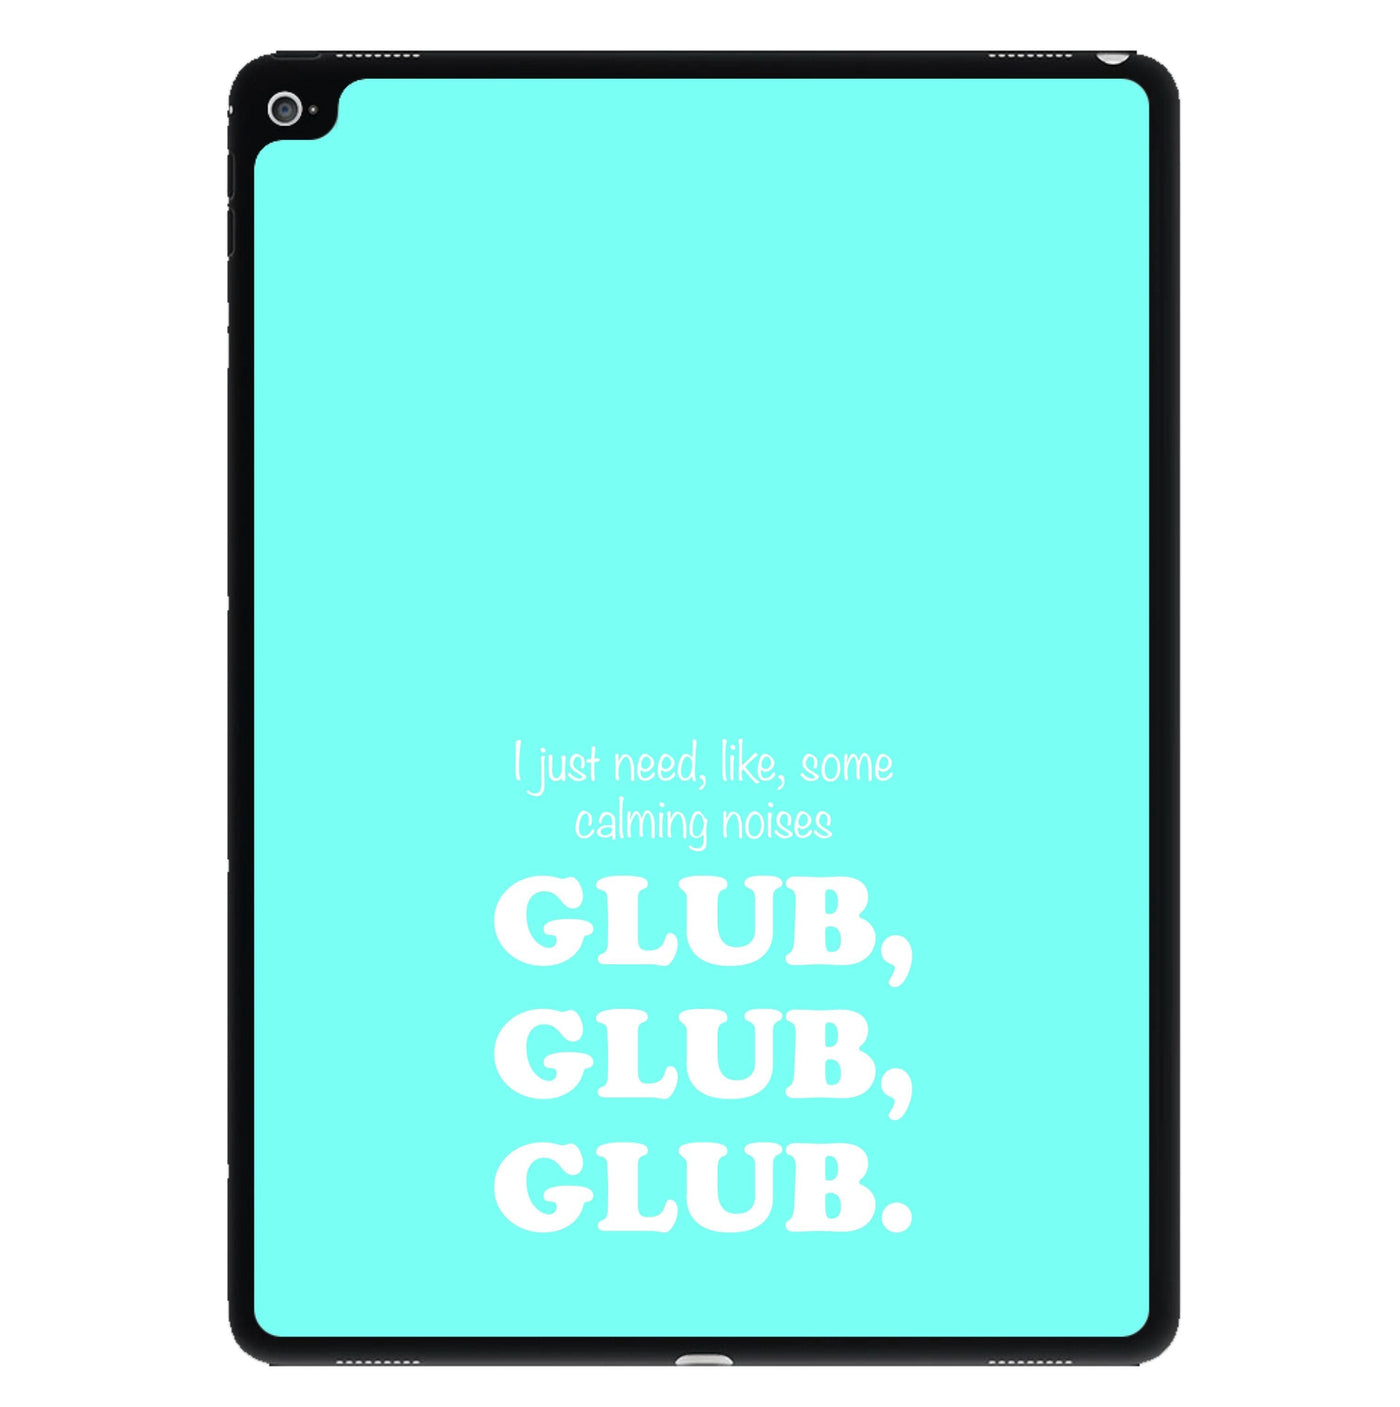 Glub Glub Glub - Brooklyn Nine-Nine iPad Case